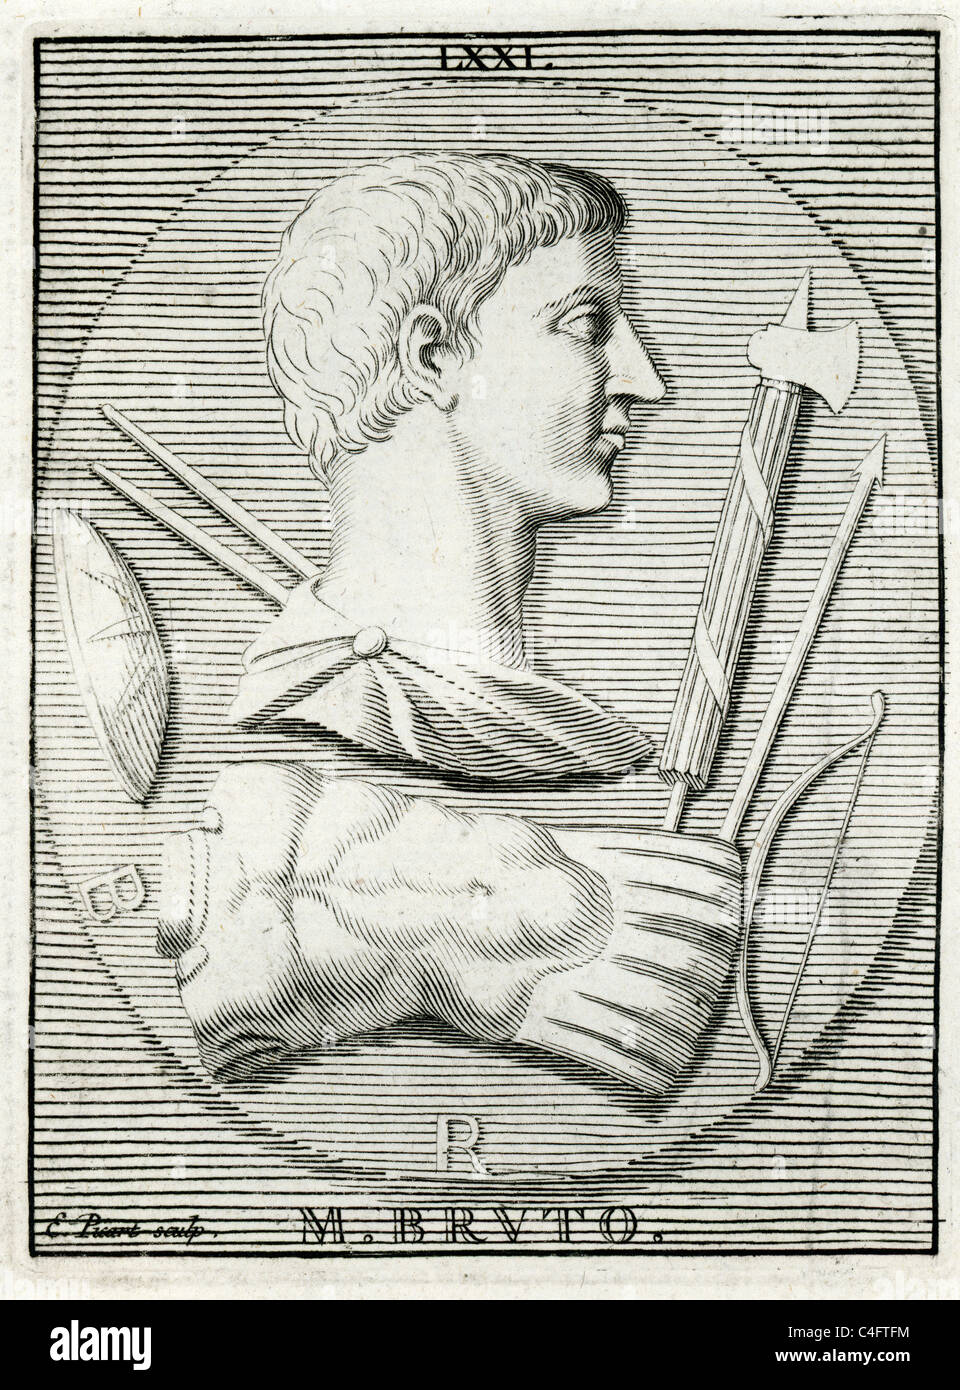 Ritratto classico di Marco Giunio Bruto spesso indicato semplicemente come Bruto, era un politico della tarda Repubblica Romana. Foto Stock